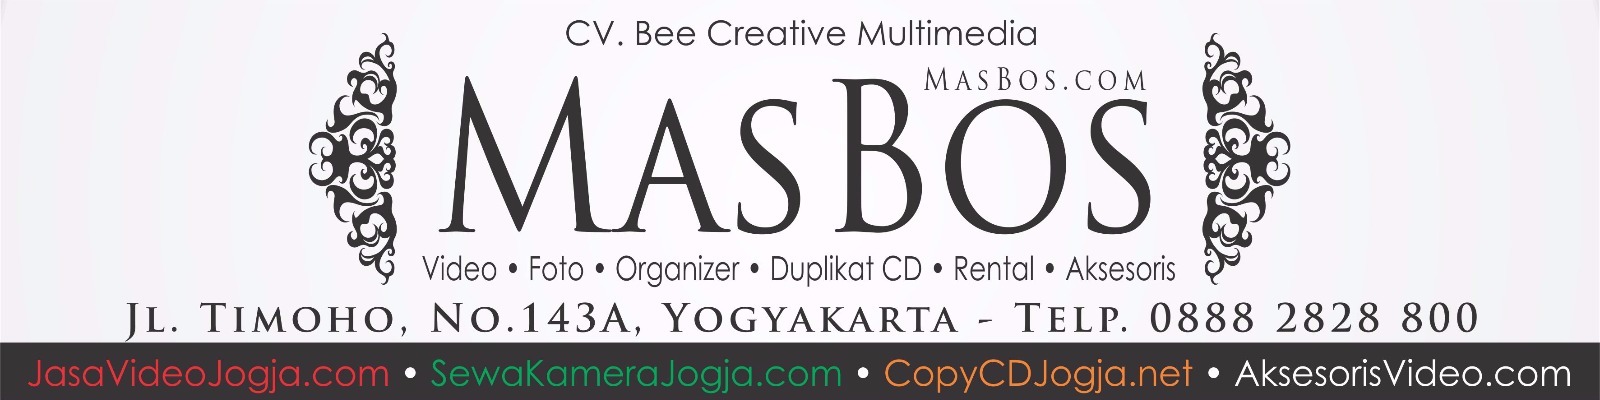 Lowongan Marketing & Video Editor di masbos.com 